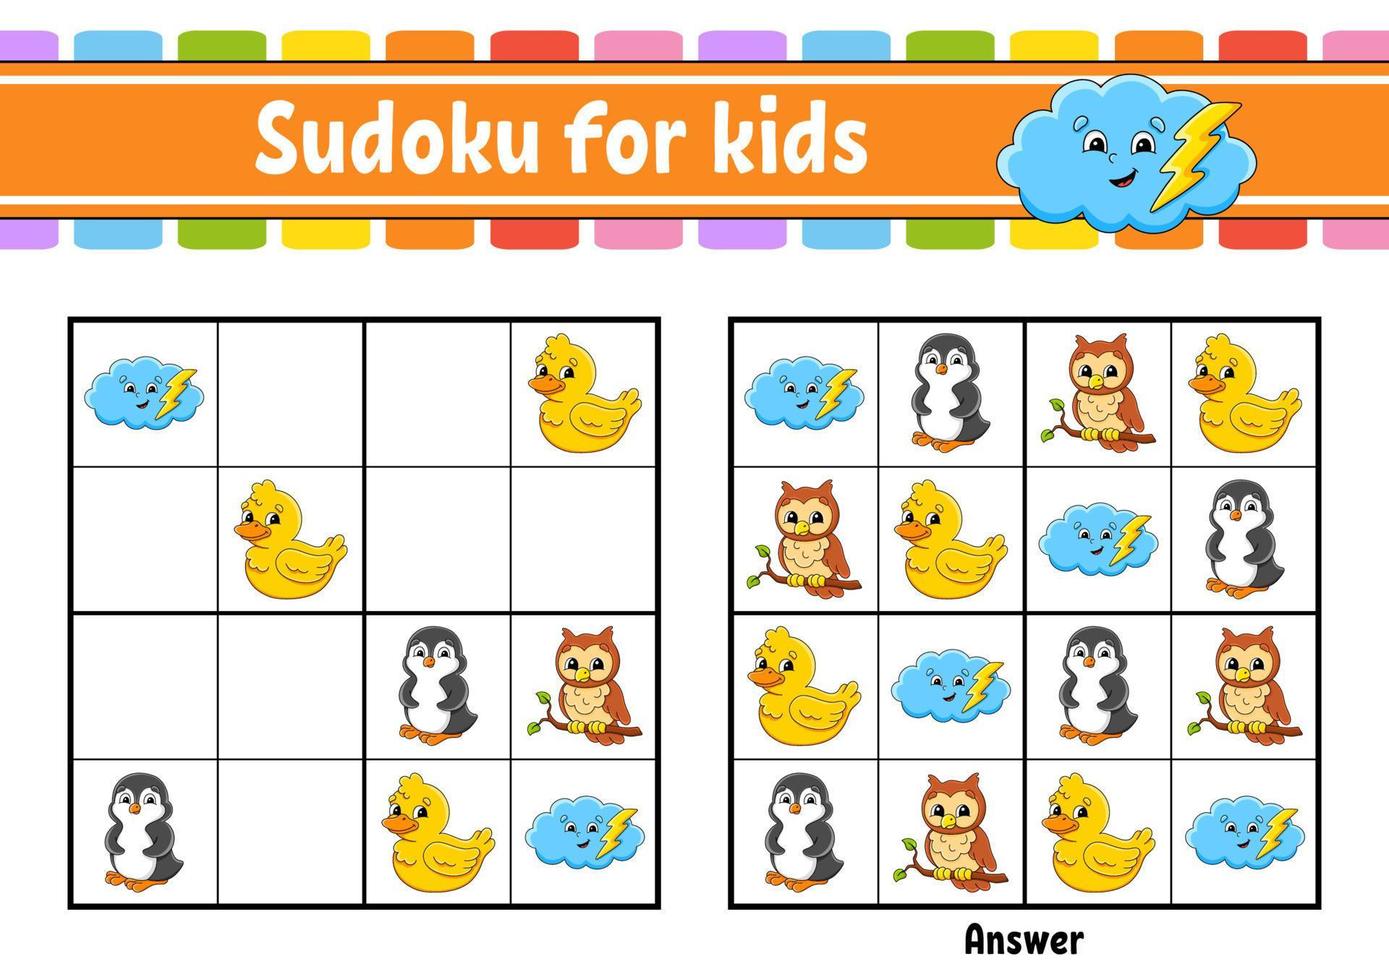 Sudoku für Kinder. arbeitsblatt zur bildungsentwicklung. Zeichentrickfigur. Aktivitätsseite in Farbe. Puzzlespiel für Kinder. logisches denken trainieren. Vektor-Illustration. vektor